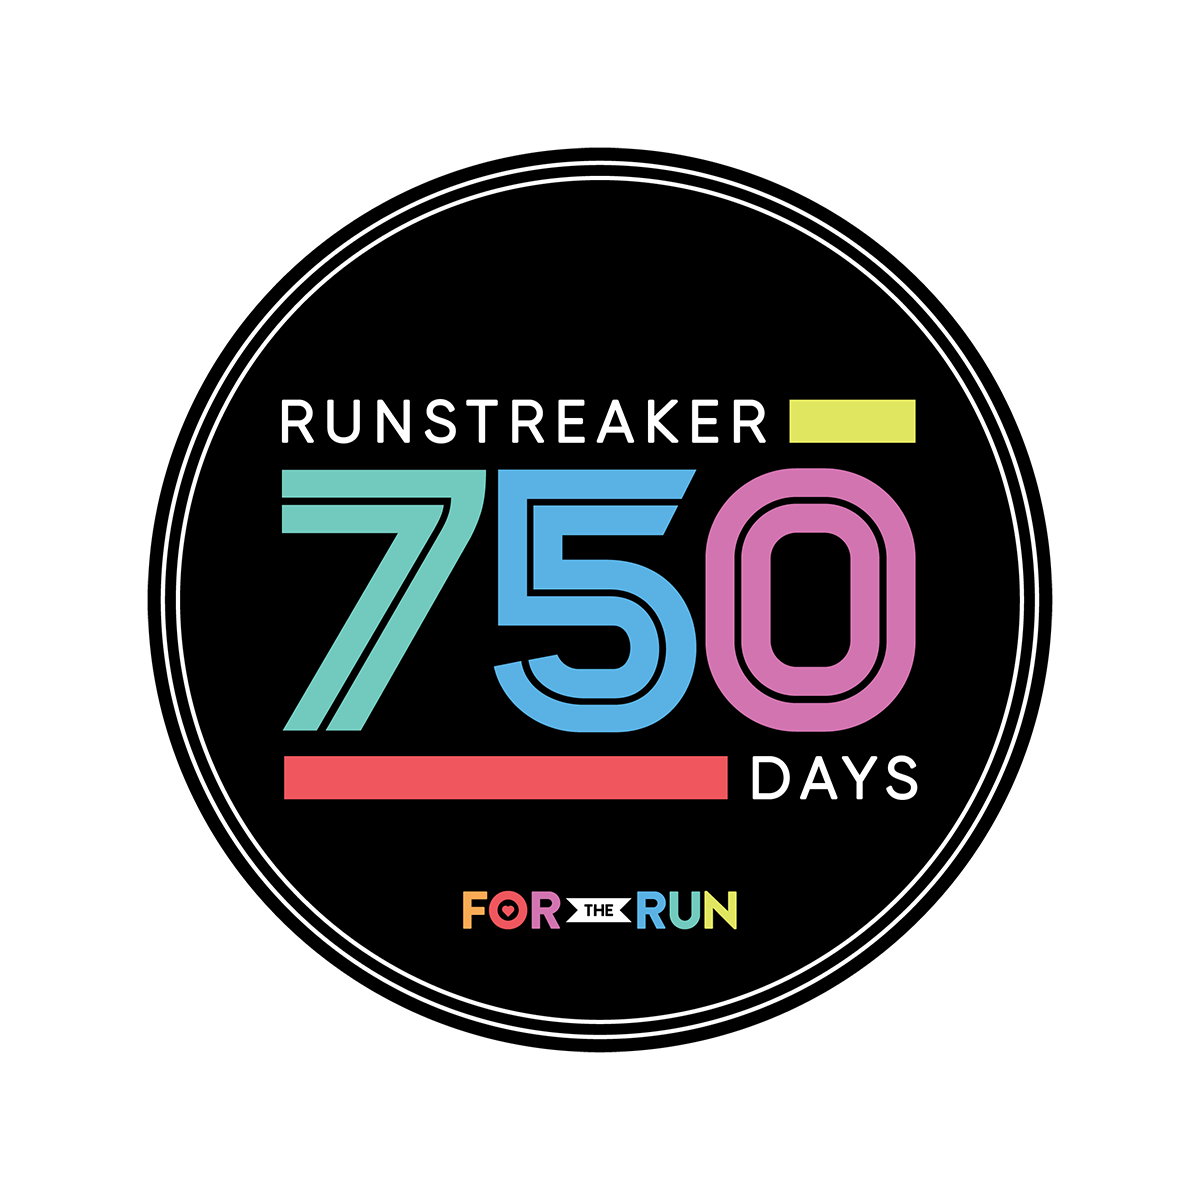 Runstreaker 750 - Sticker